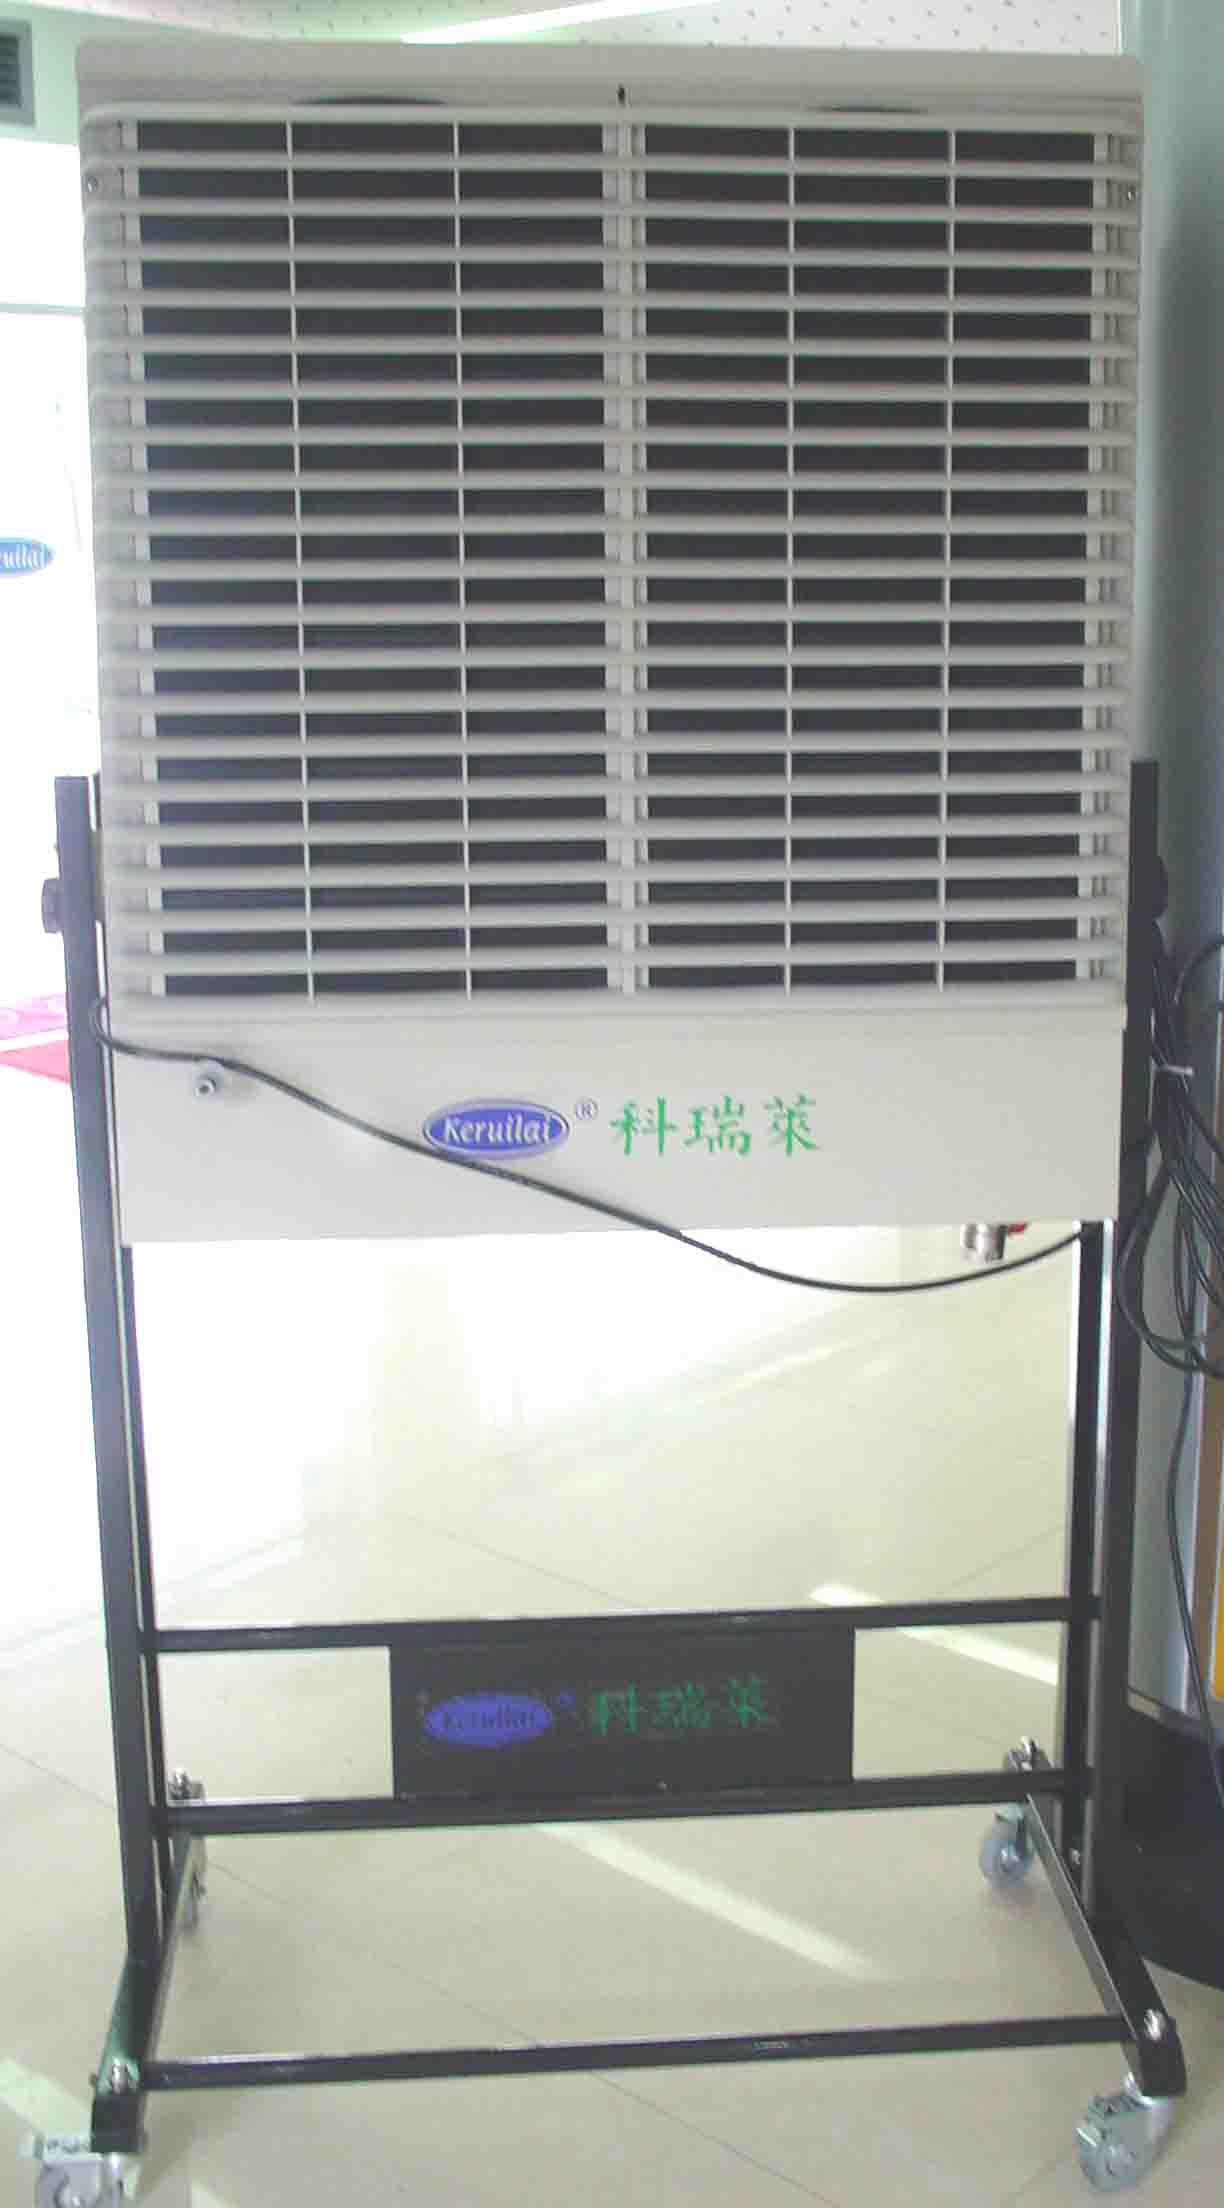  Keruilai Evaporative Air Cooler (Keruilai испарений Air Cooler)